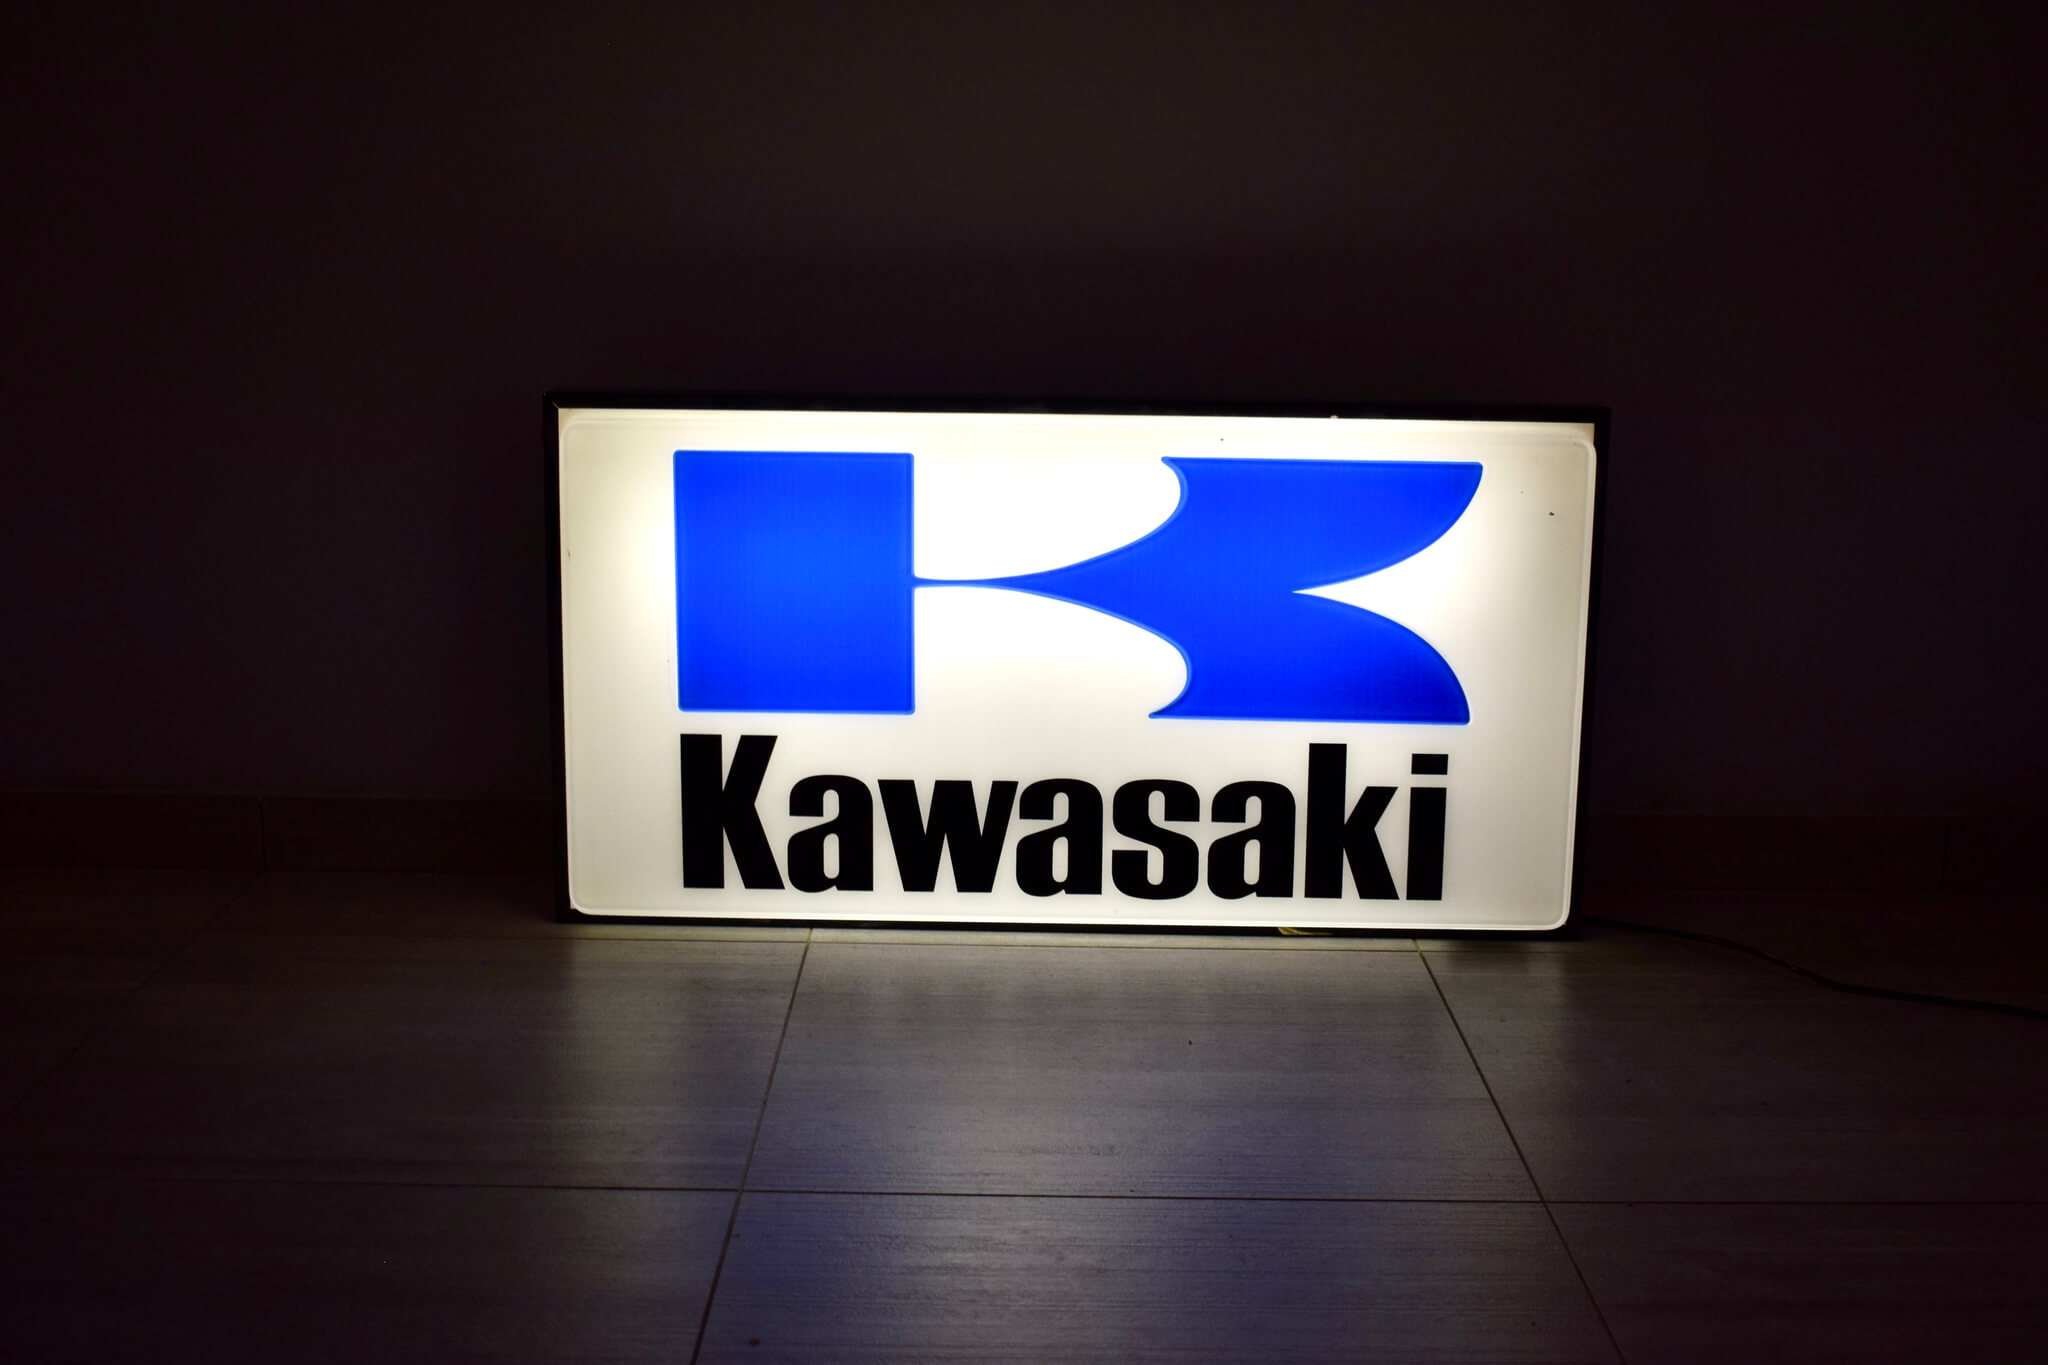 How to draw the Kawasaki logo - YouTube